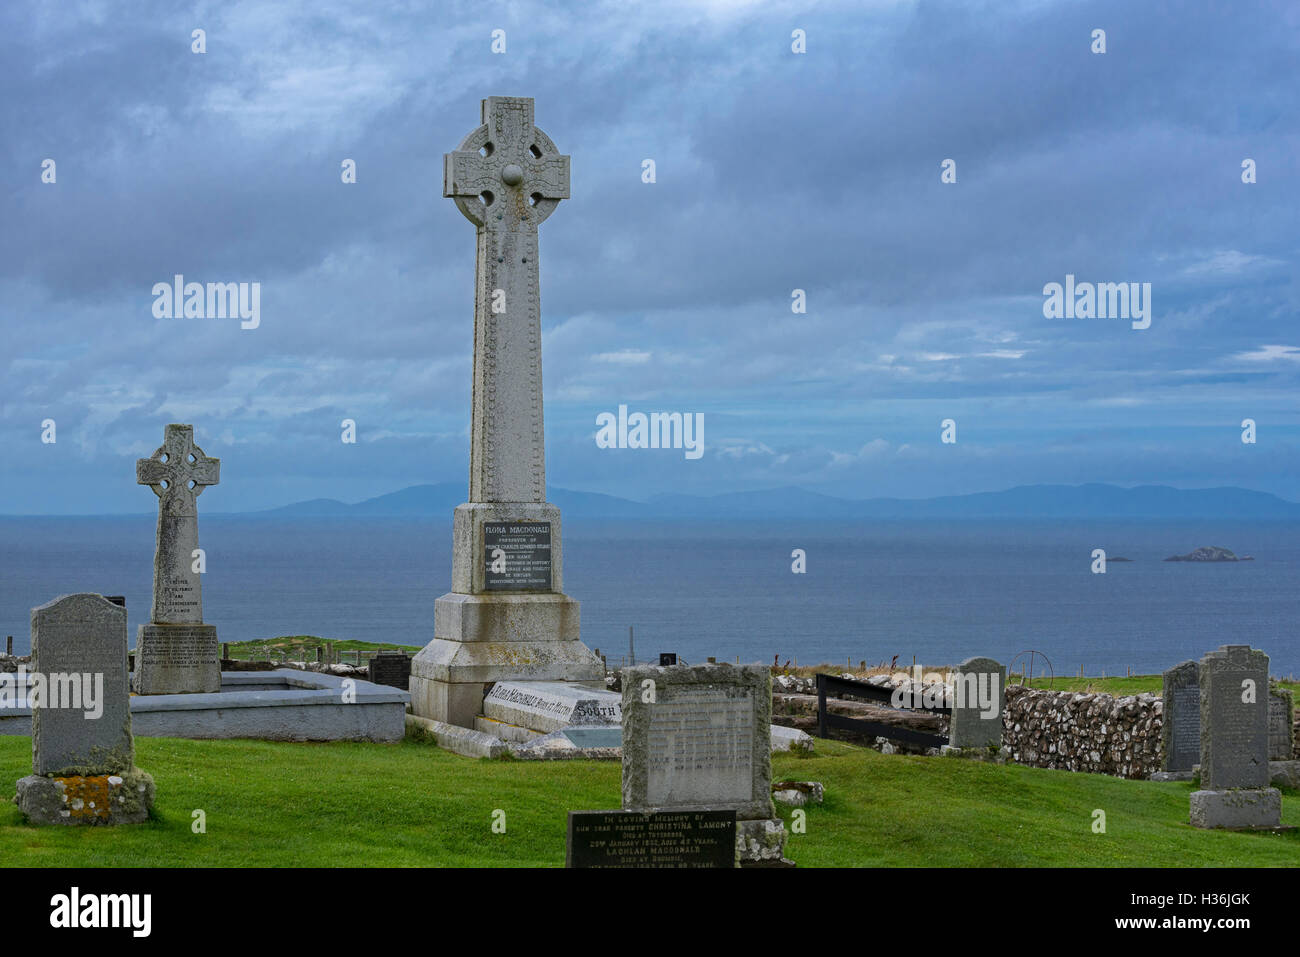 Flora MacDonald's monument sur le cimetière de Kilmuir, île de Skye, en Écosse, les Highlands écossais Banque D'Images